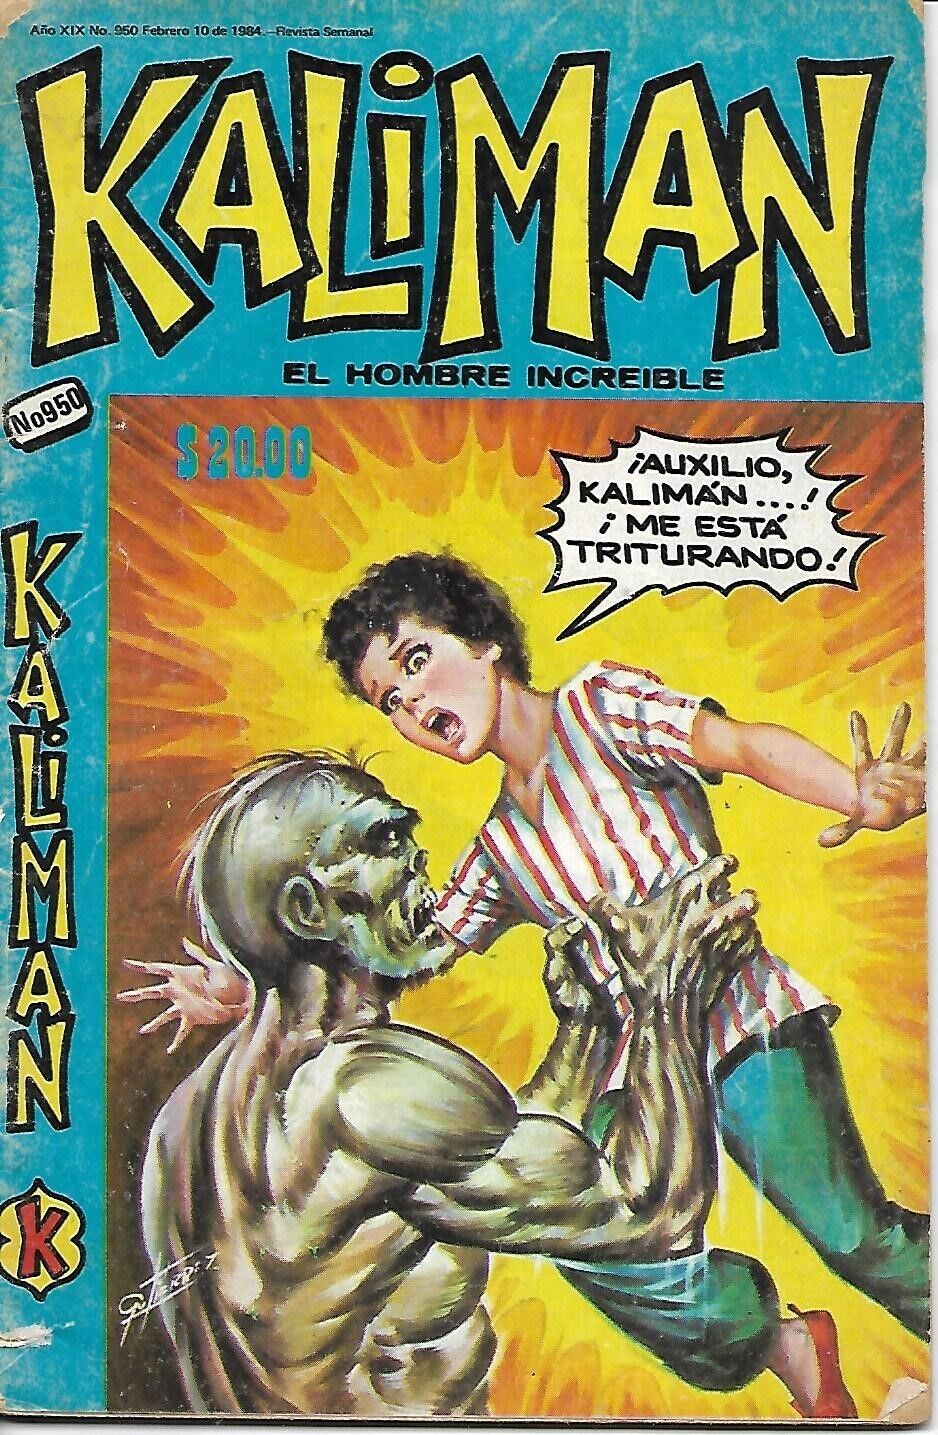 Kaliman El Hombre Increible #950 - Febrero 10, 1984 - Mexico